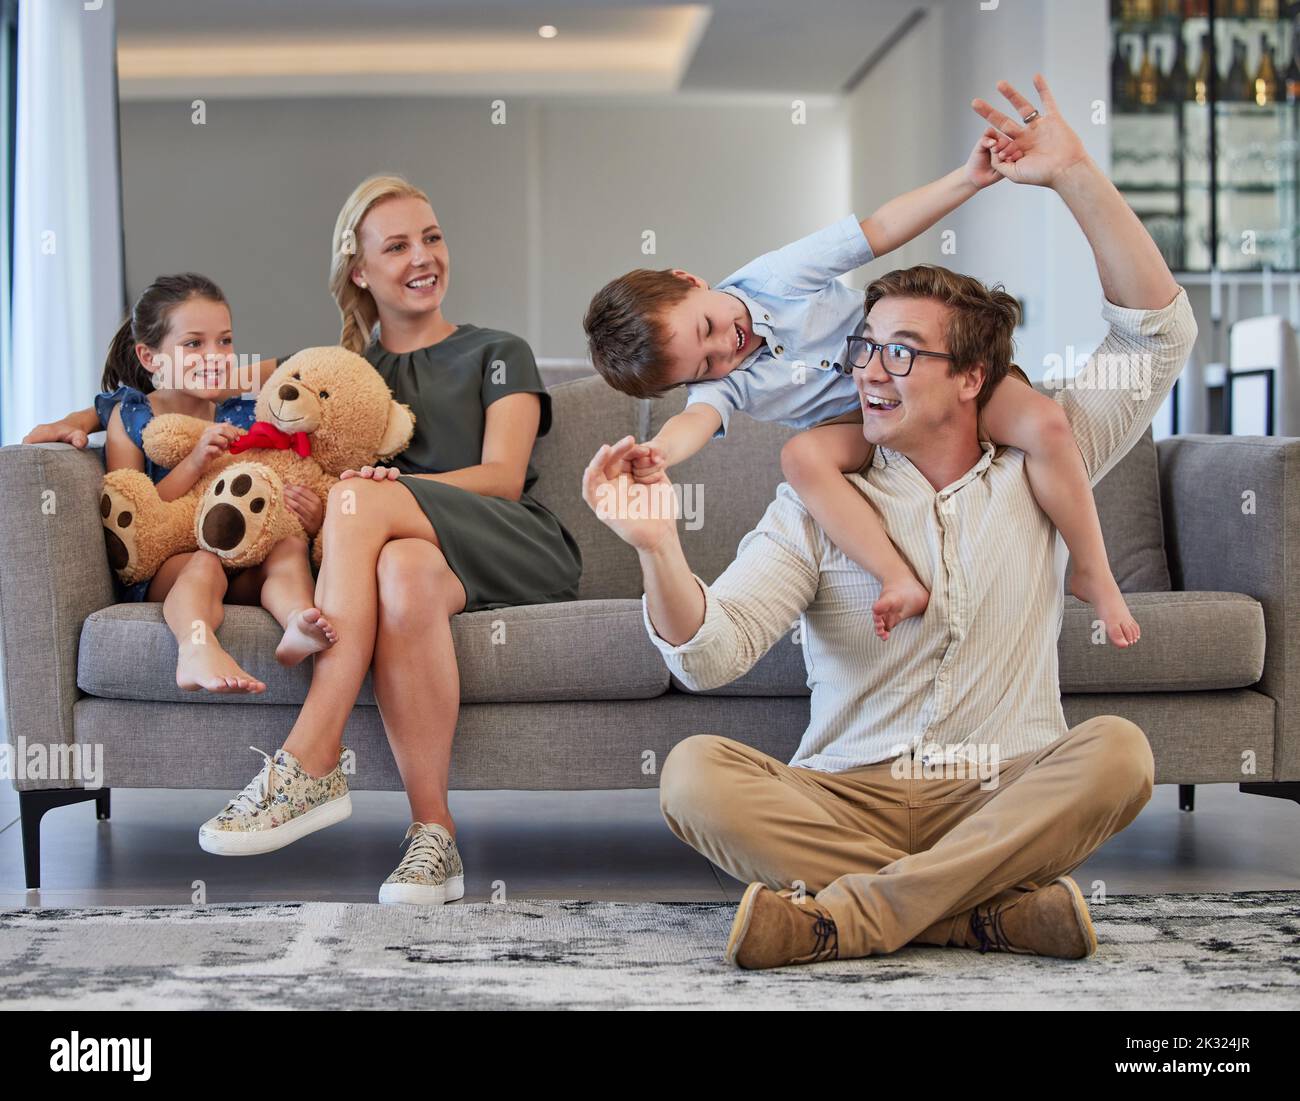 Glückliche Familie, spielende Kinder und fürsorgliche Eltern, die Spaß haben, während sie sich verbinden, lieben und zusammen in der Lounge zu Hause sitzen. Mann, Frau und Kinder Stockfoto